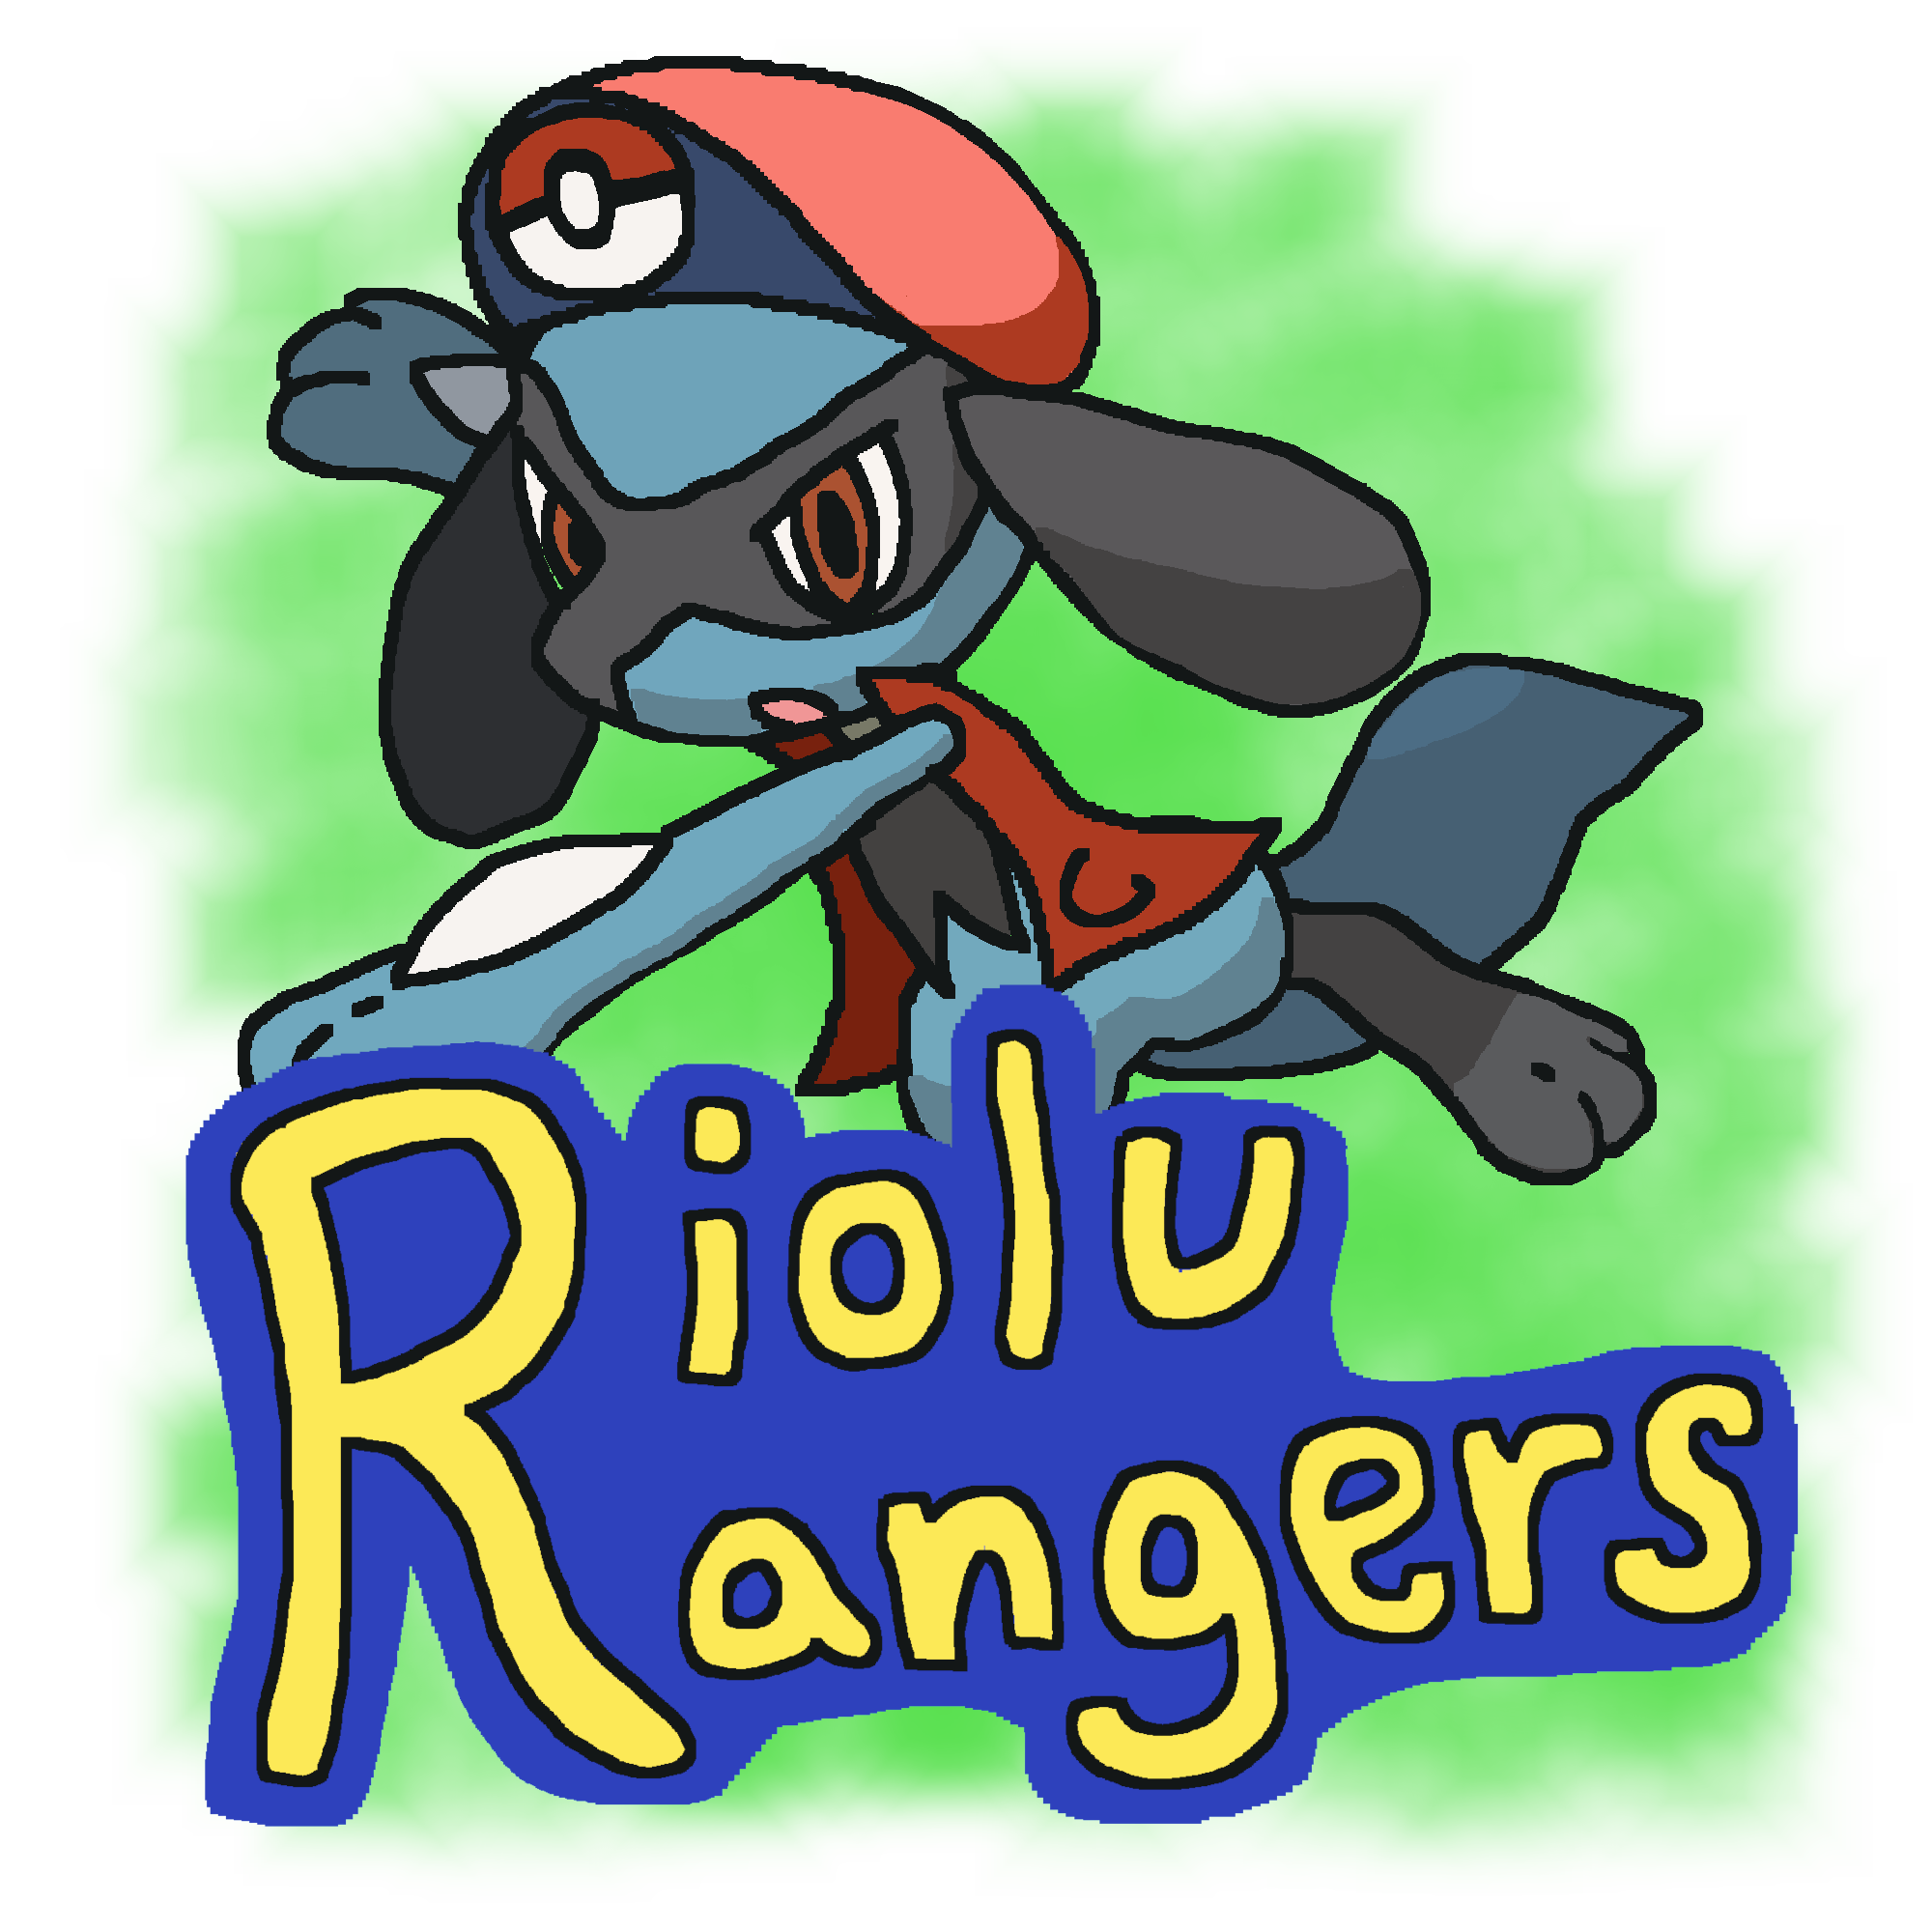 Riolu Rangers.png